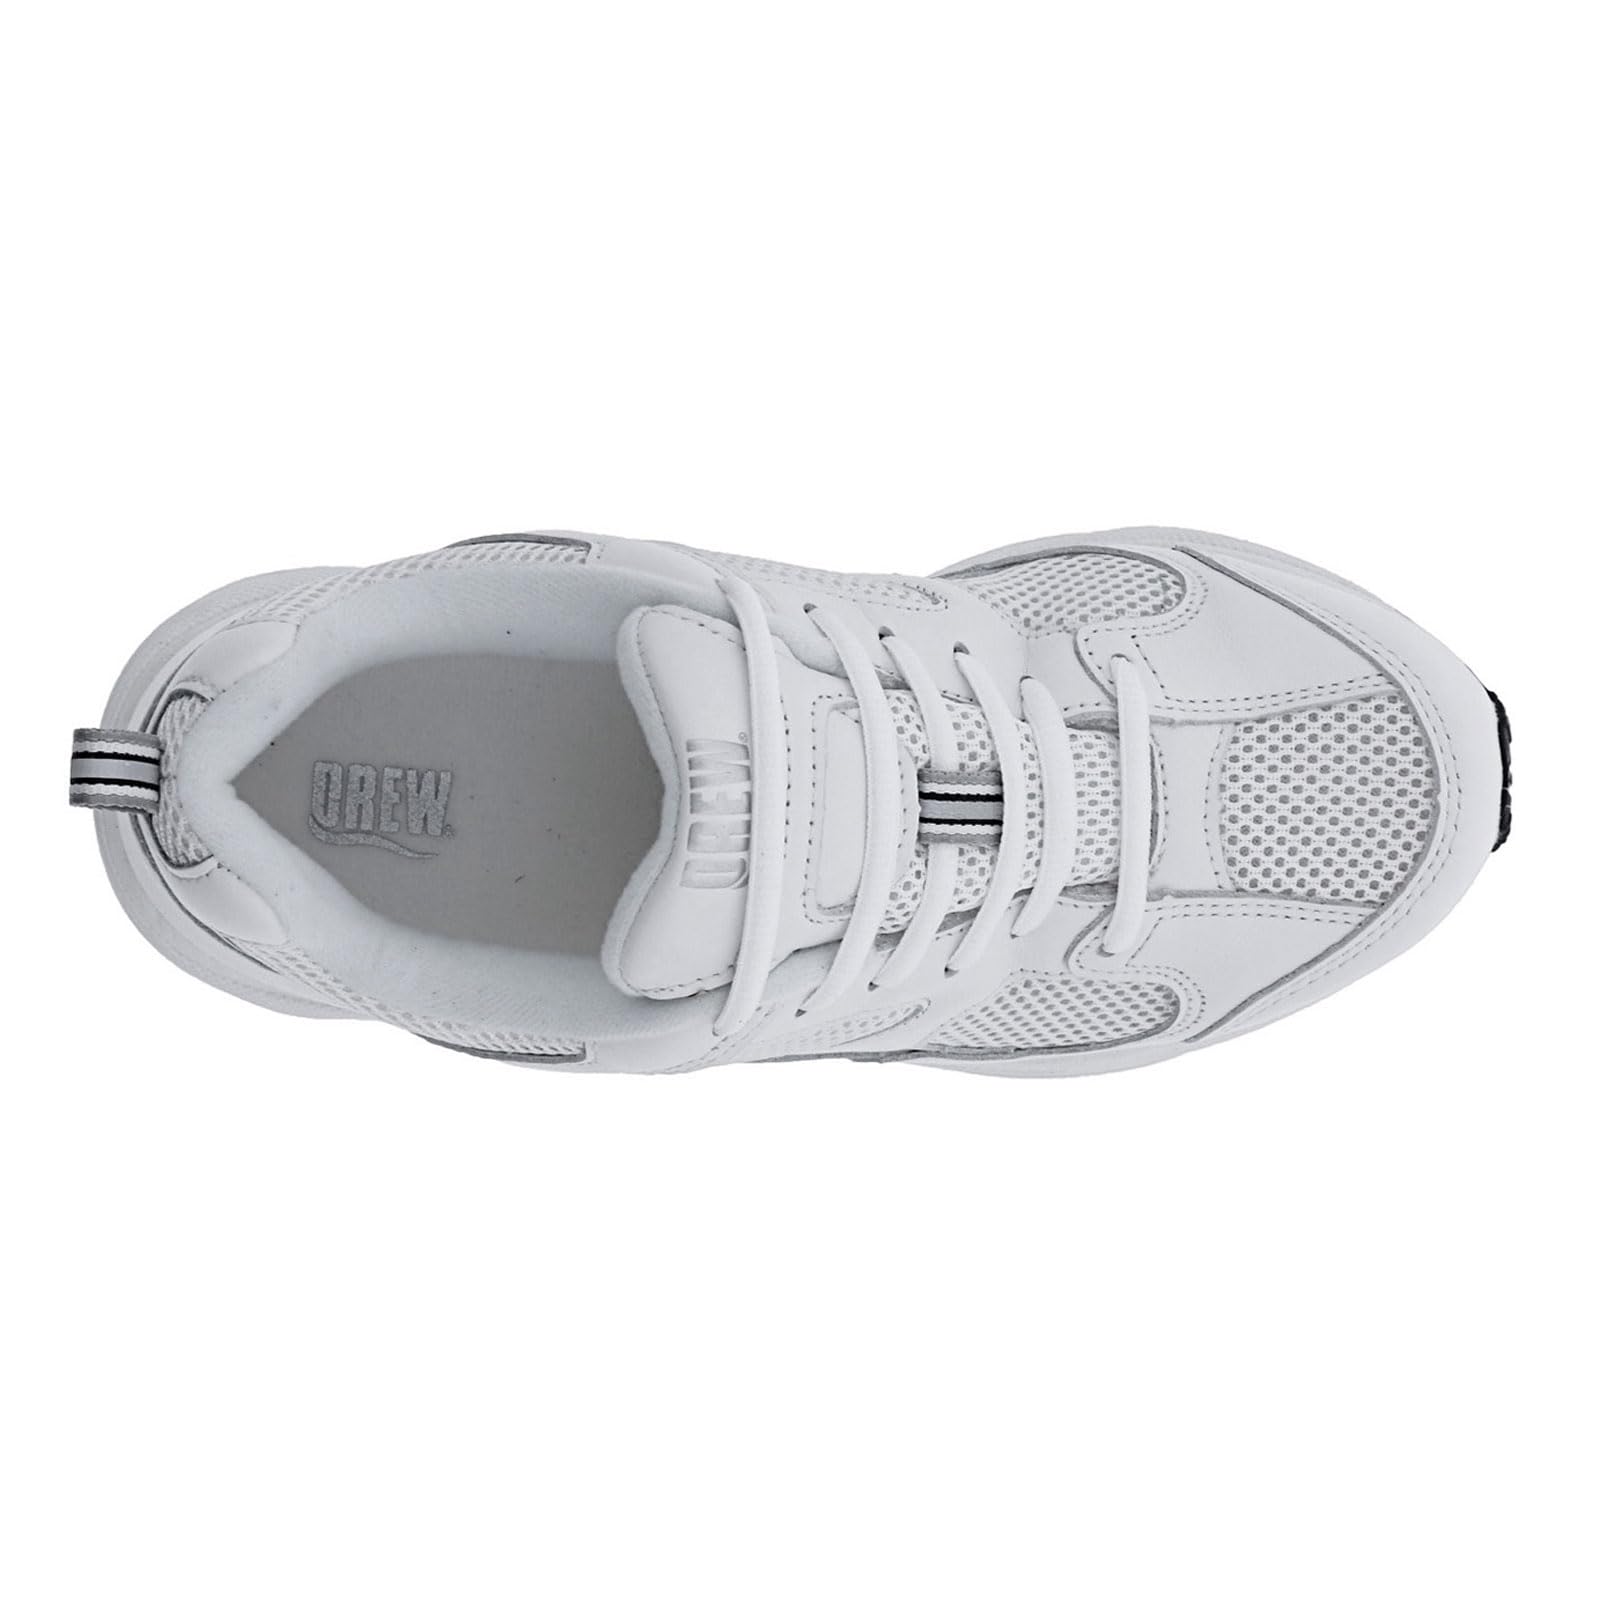 Drew Shoe Women's Flash II Sneakers,White,8.5 W